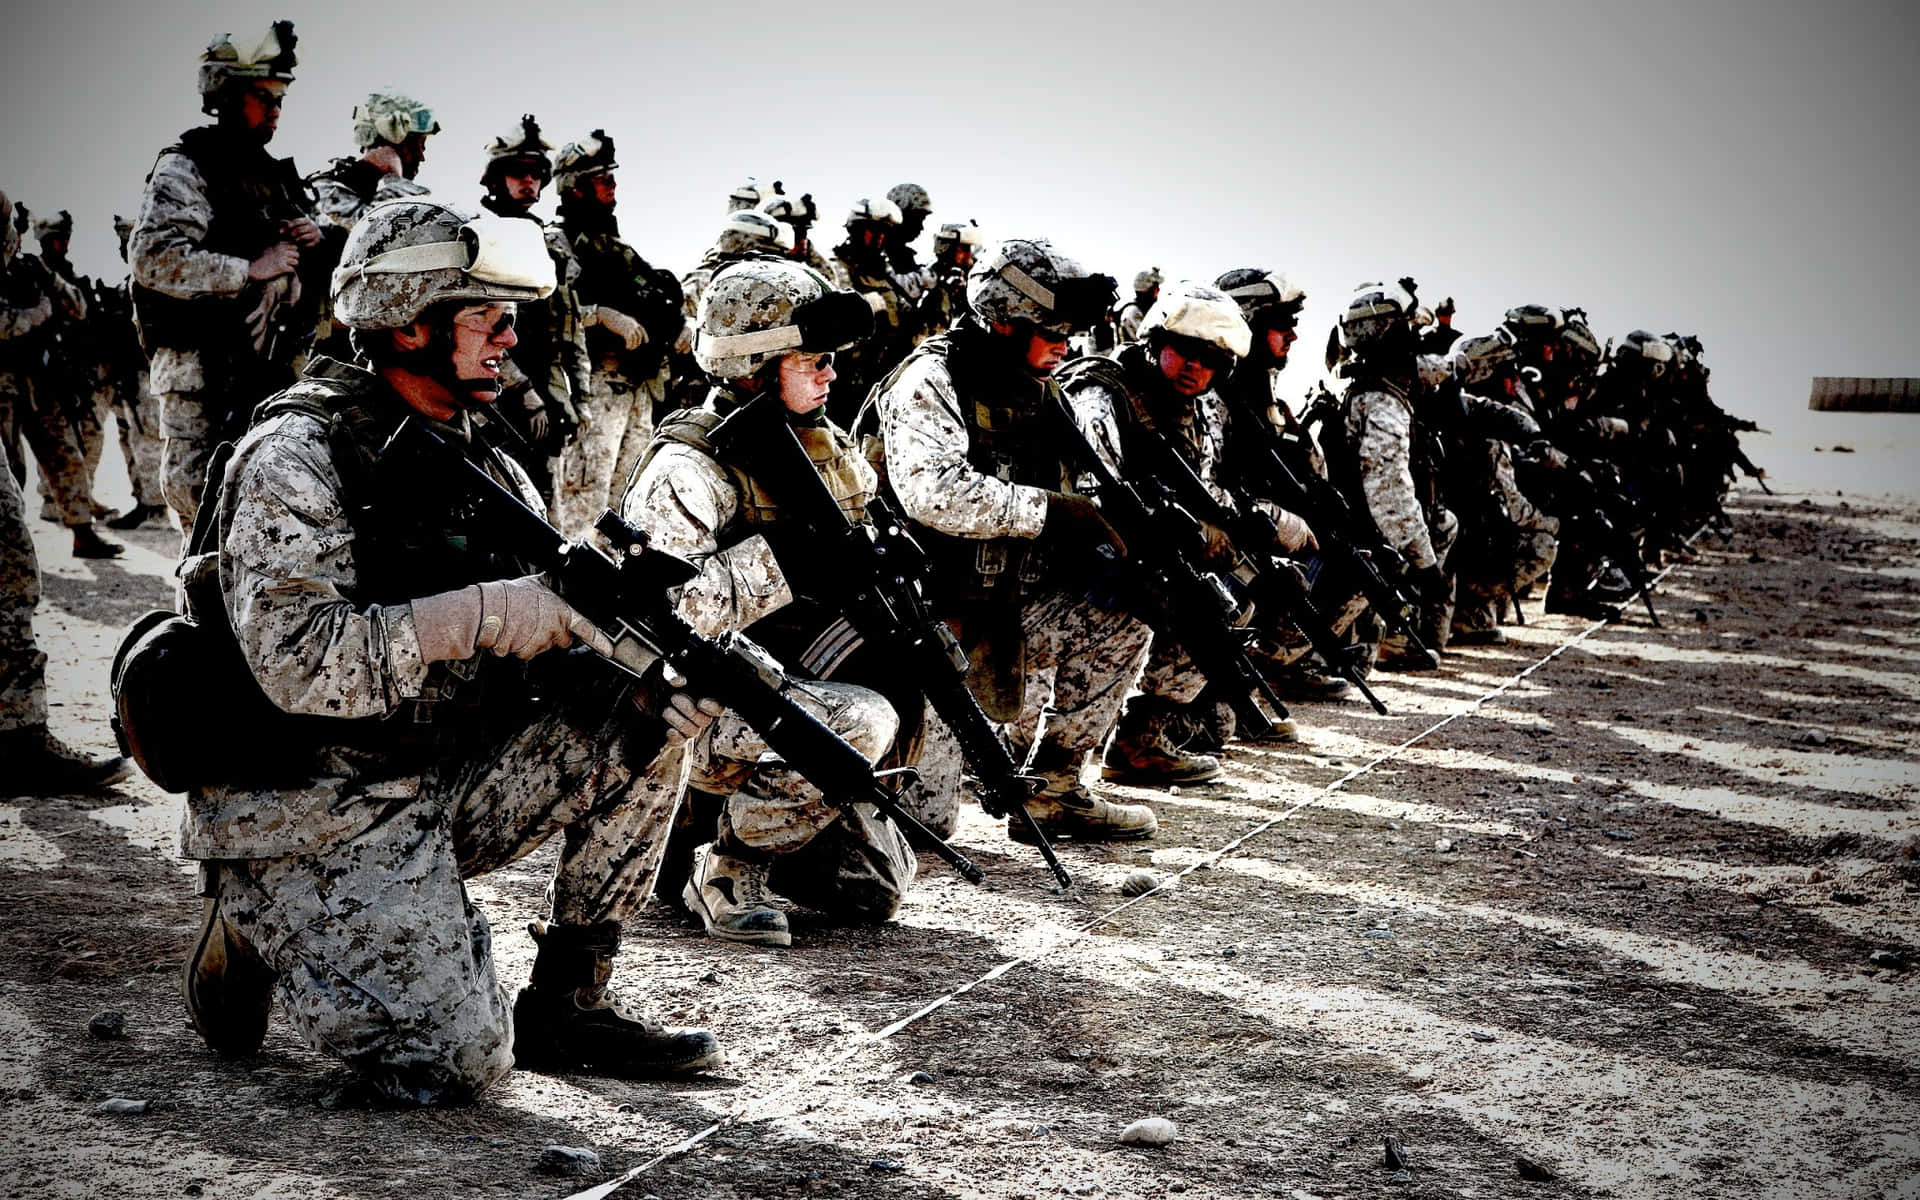 Imagensde Soldados Em Uniforme Camuflado.